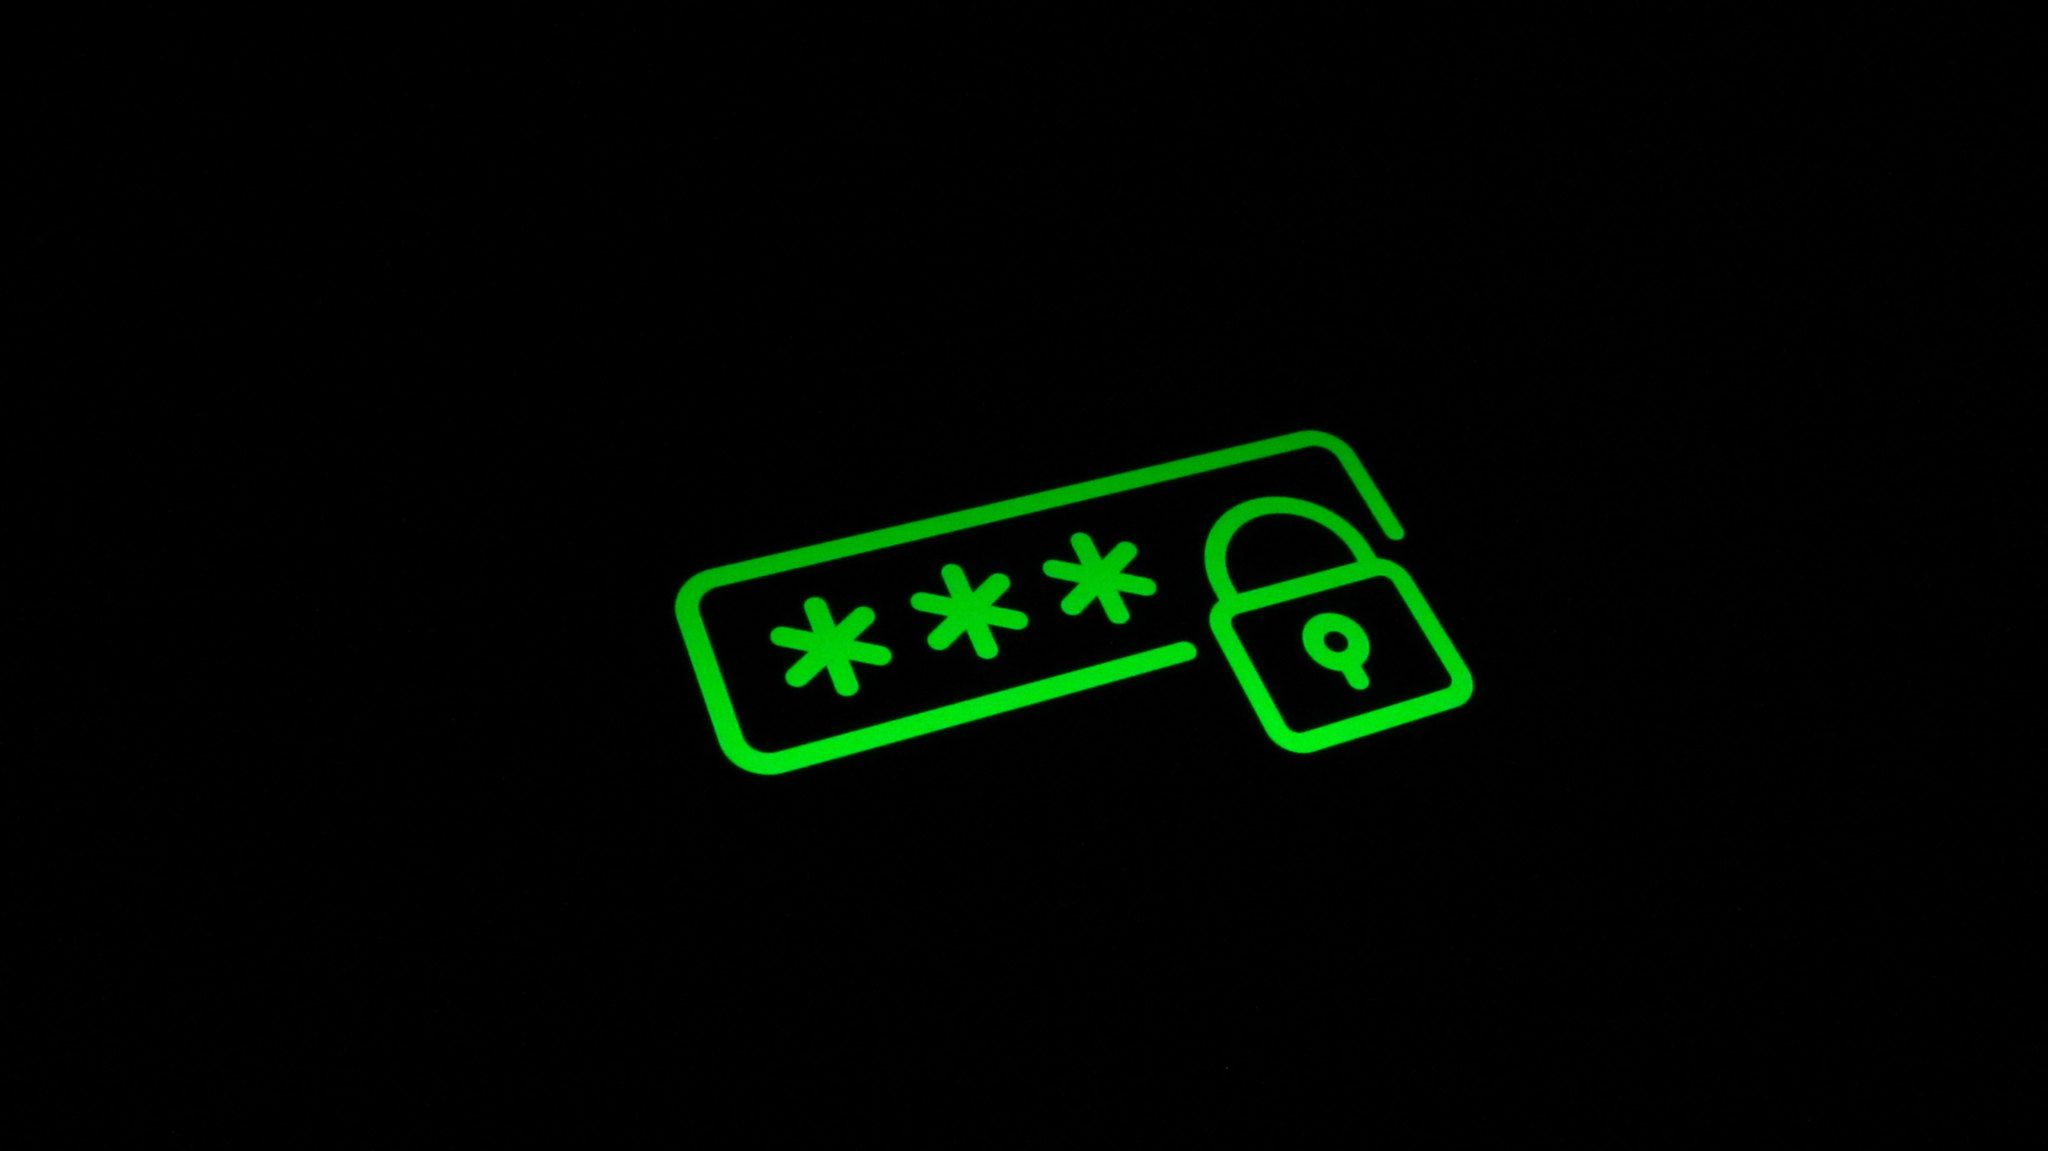 mật khẩu màu xanh lá cây và biểu tượng khóa trên màn hình đen